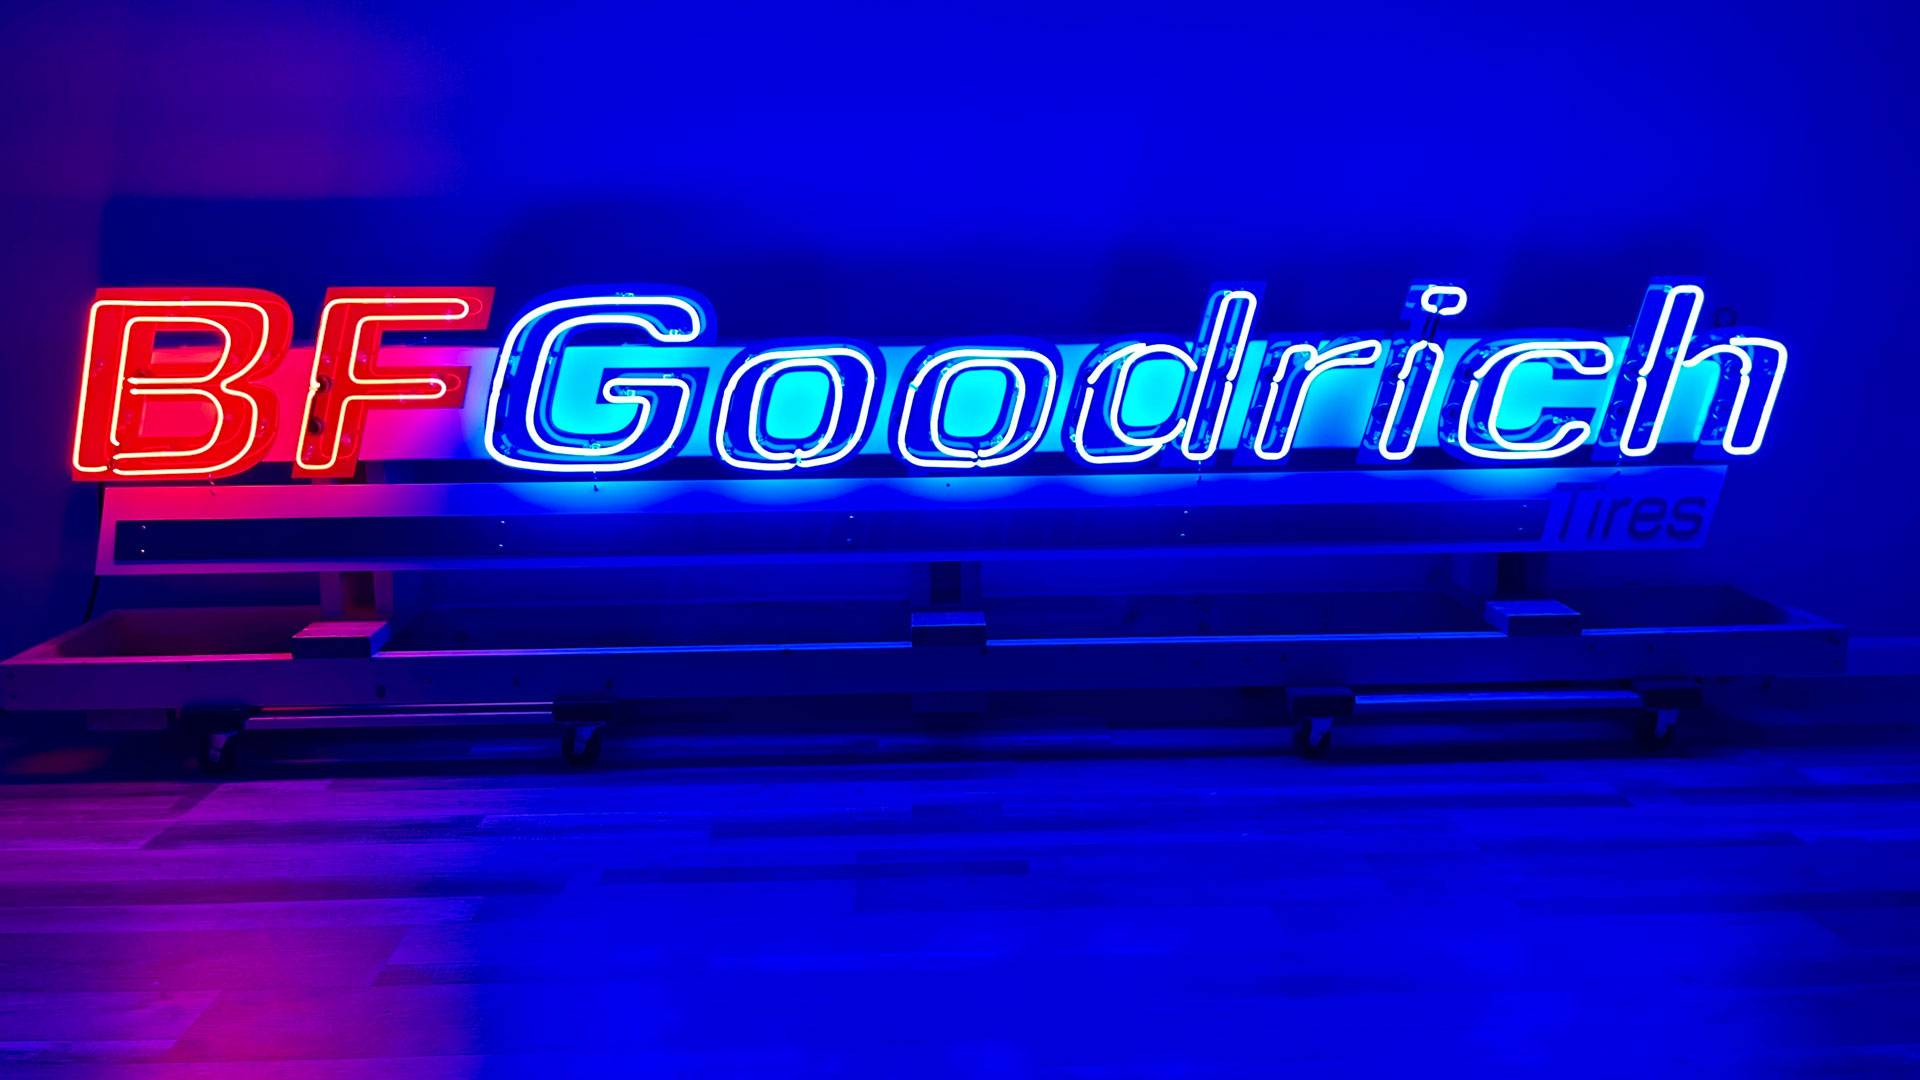 BF Goodrich Neon Raceway Style Sign